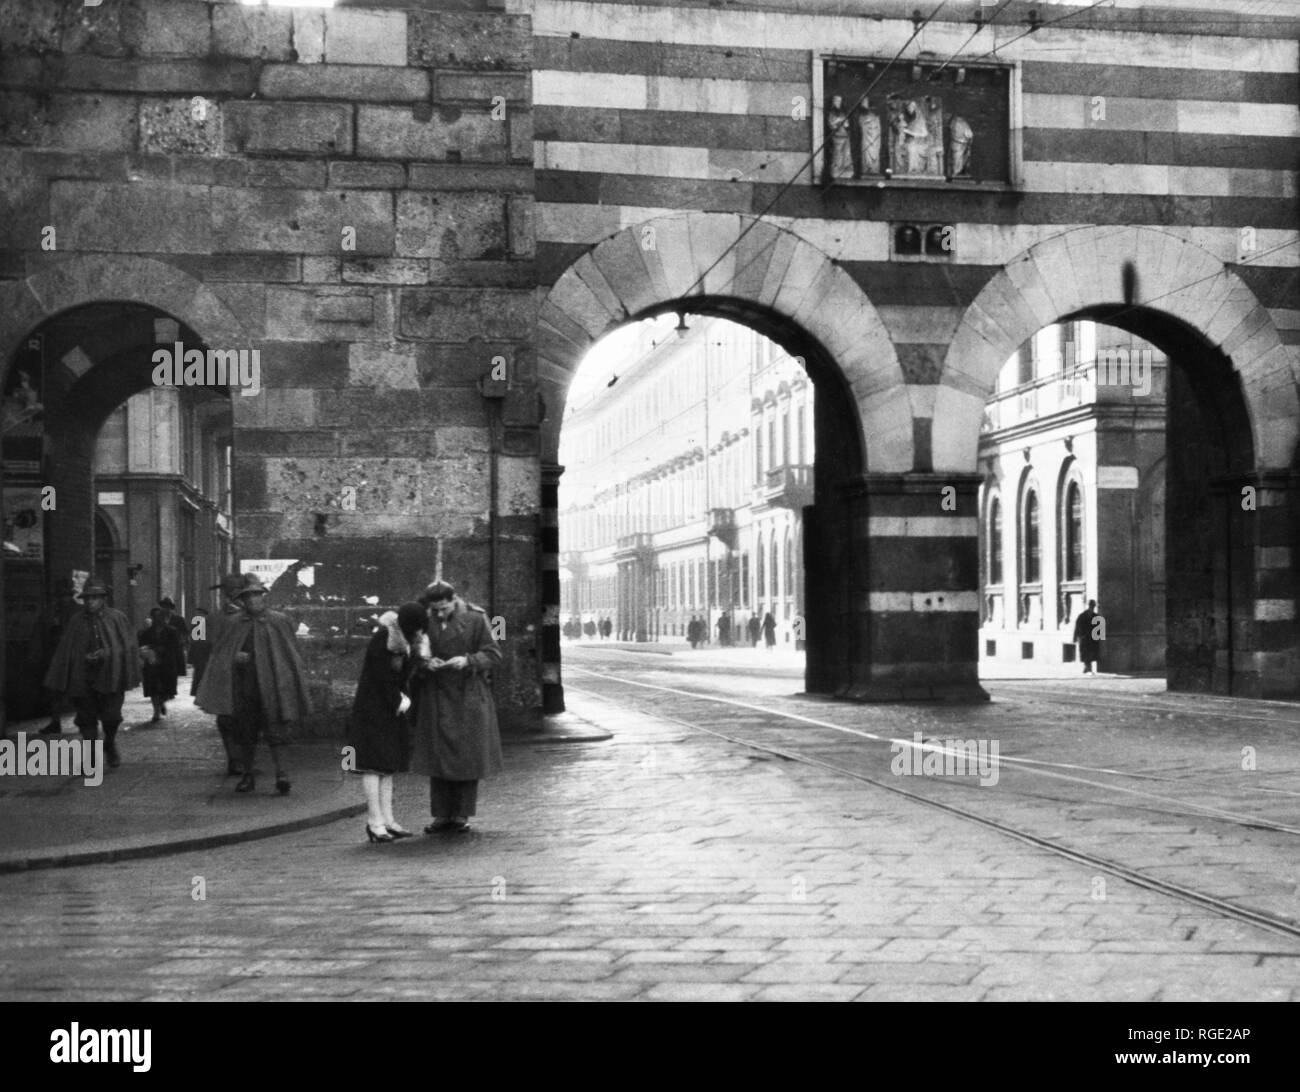 Italia, Milán, porta nuova, 1930 Foto de stock